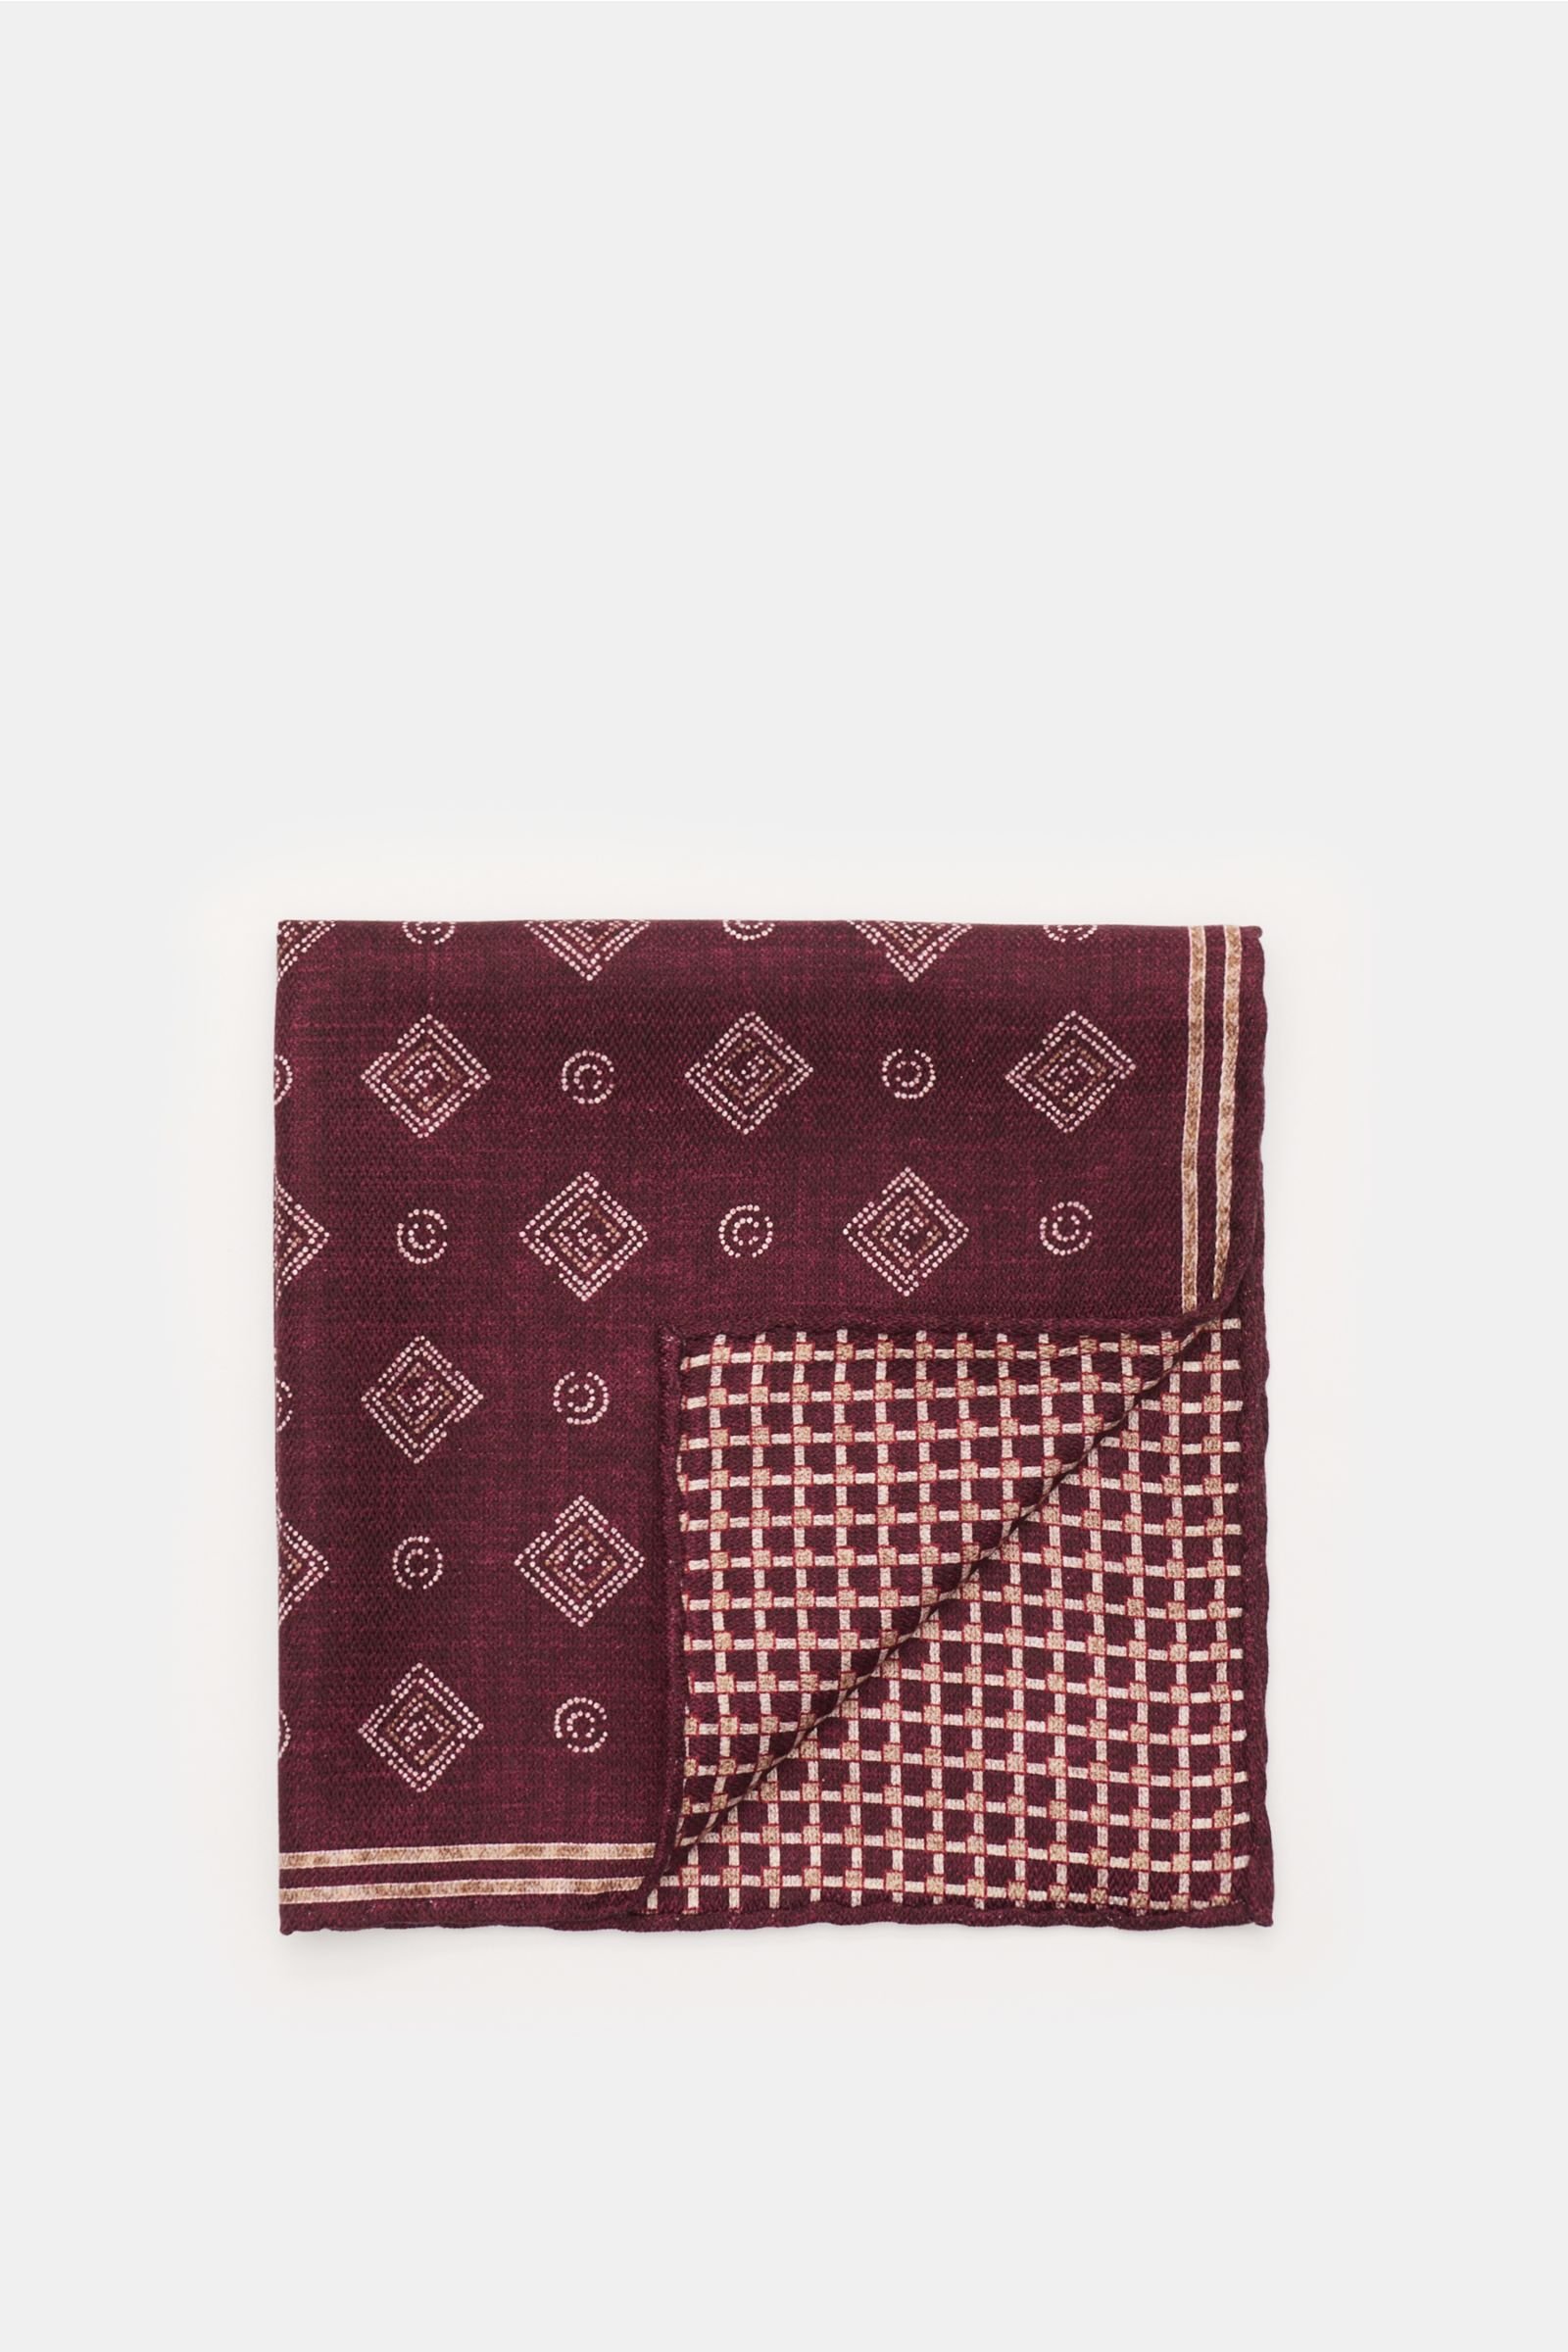 Pocket square burgundy/grey-brown patterned